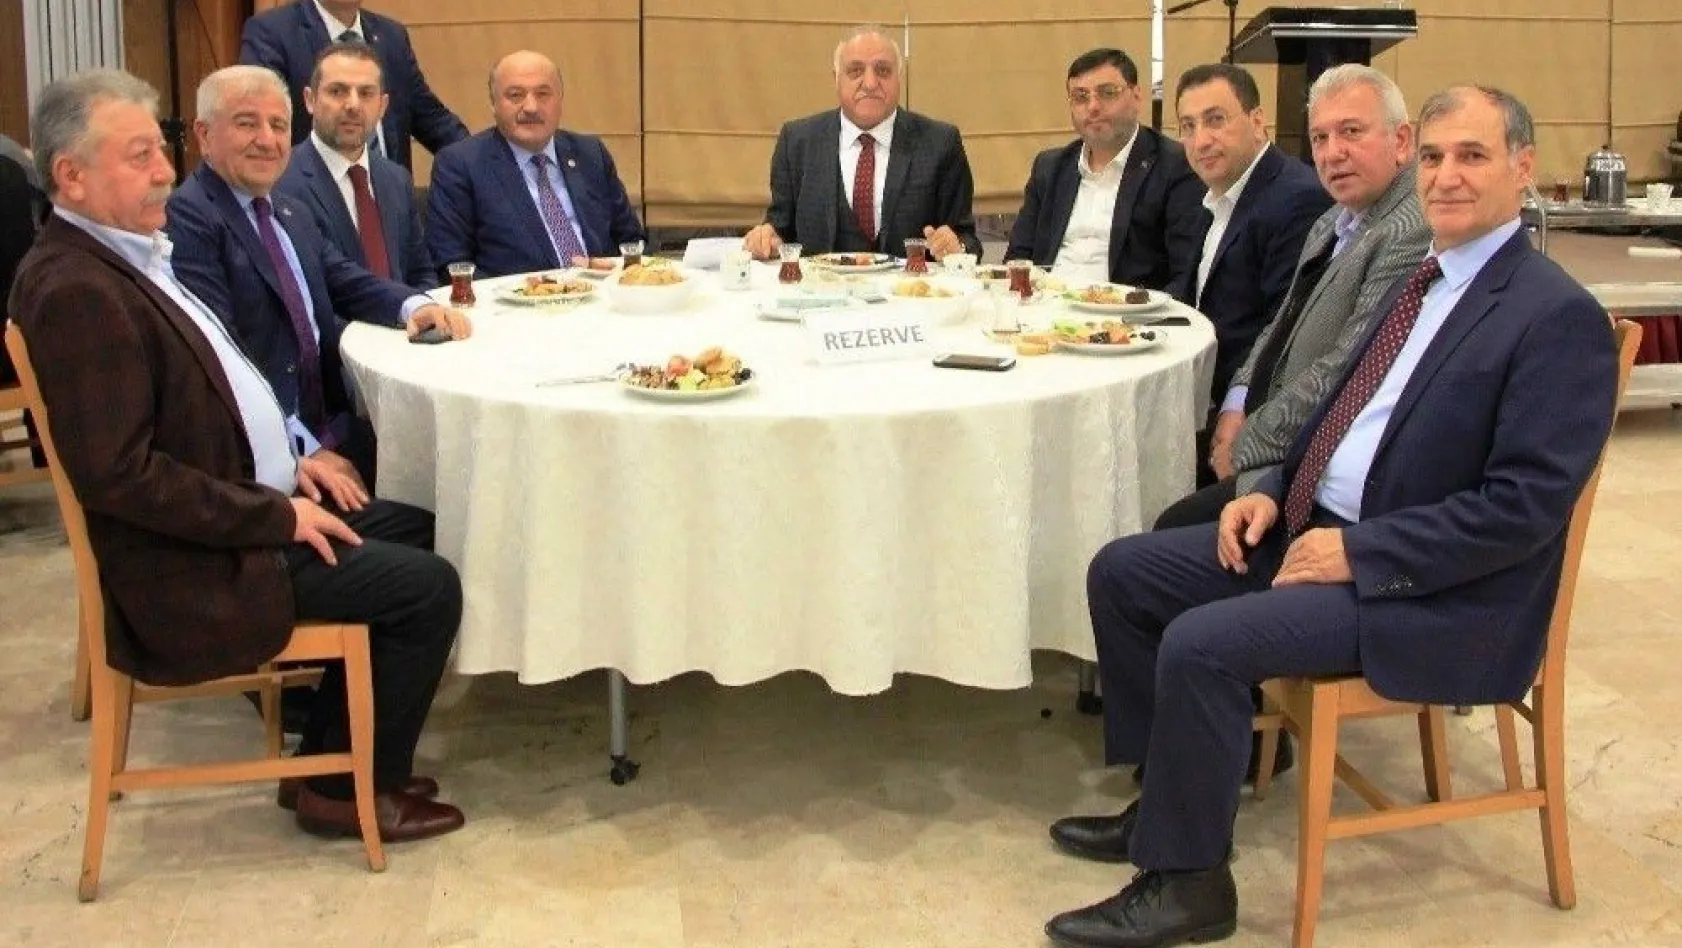 Başkentte Erzincanlılar buluşması gerçekleşti
